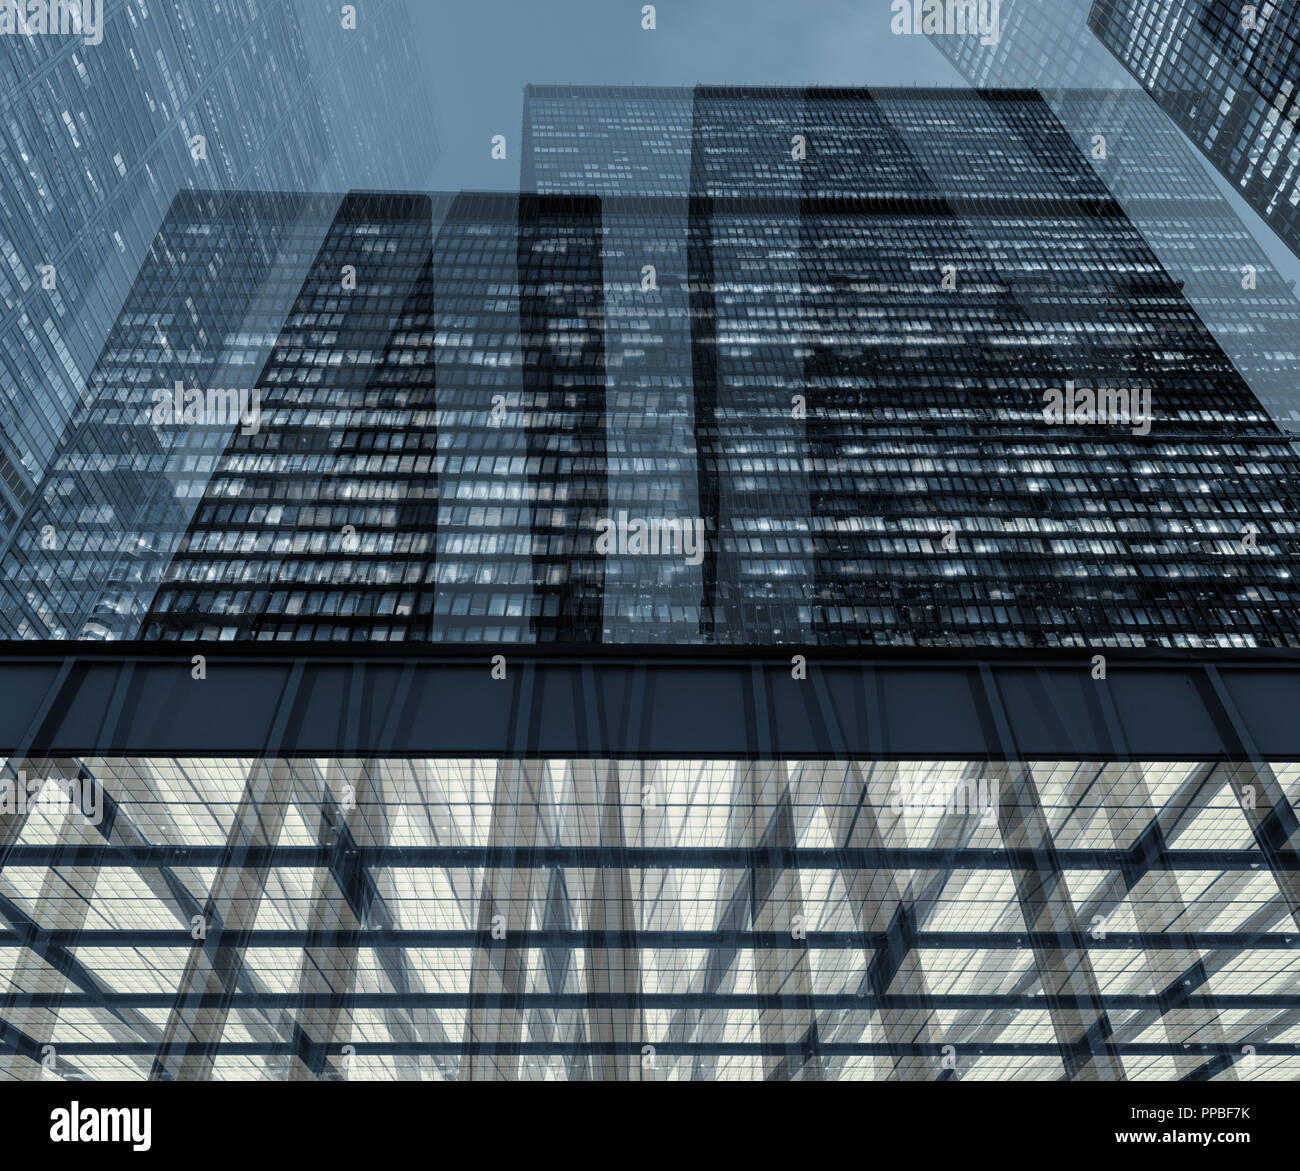 Künstlerische Komposition mehrerer Bilder von beleuchteten moderne Wolkenkratzer in Toronto Financial District (Dominion). Getönt. Stockfoto